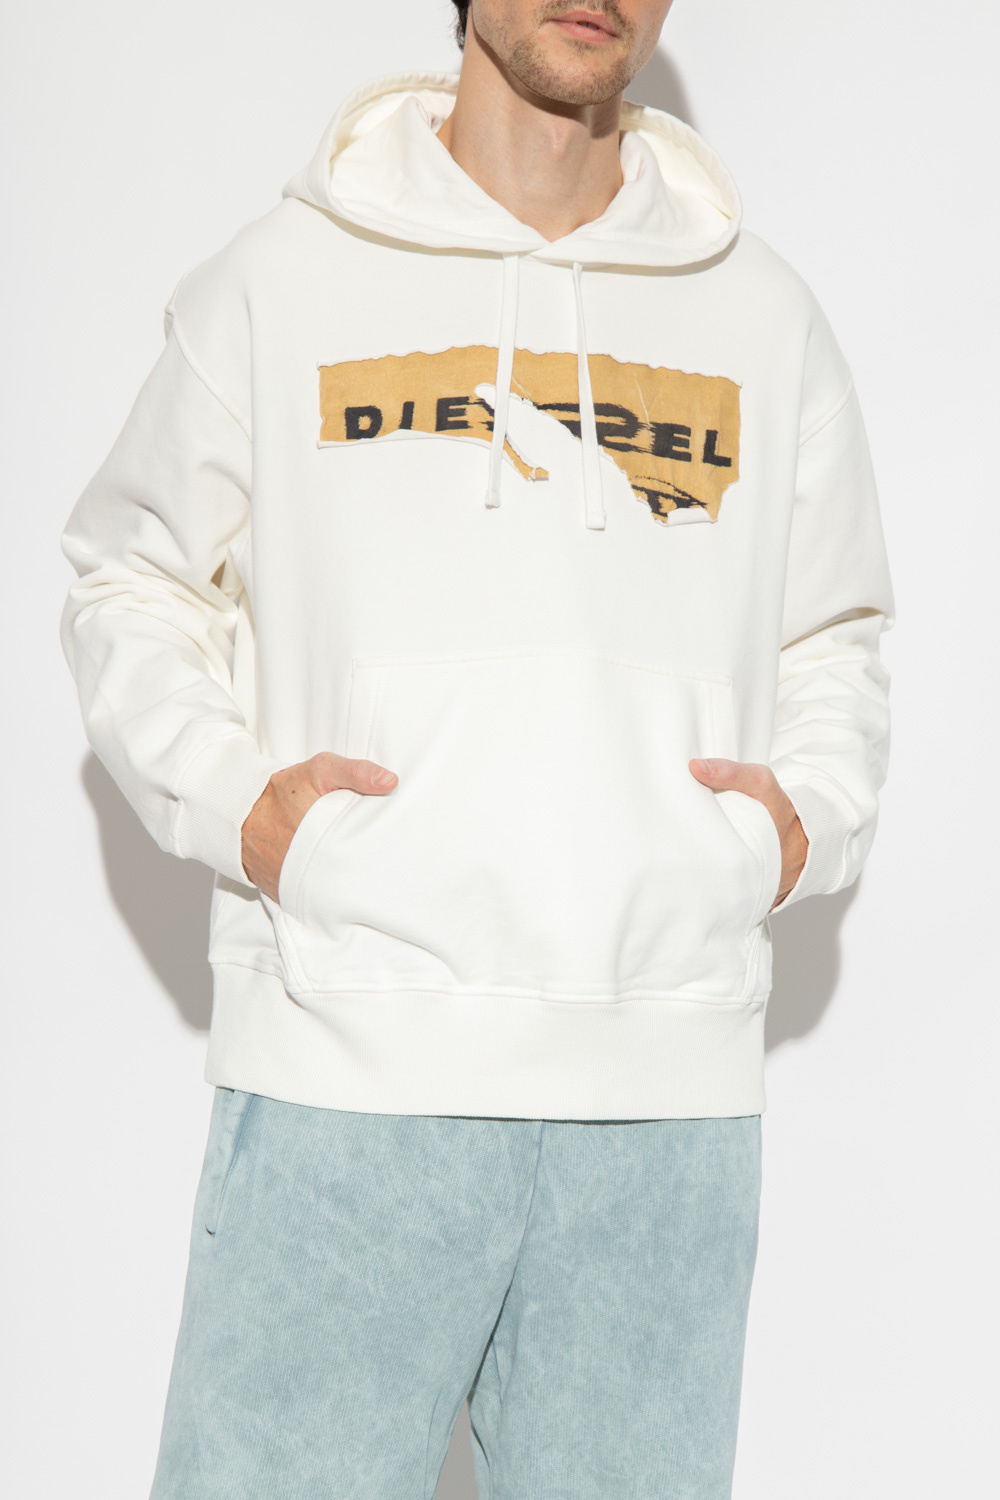 Diesel ‘S-MACS’ hoodie | Men's Clothing | Vitkac